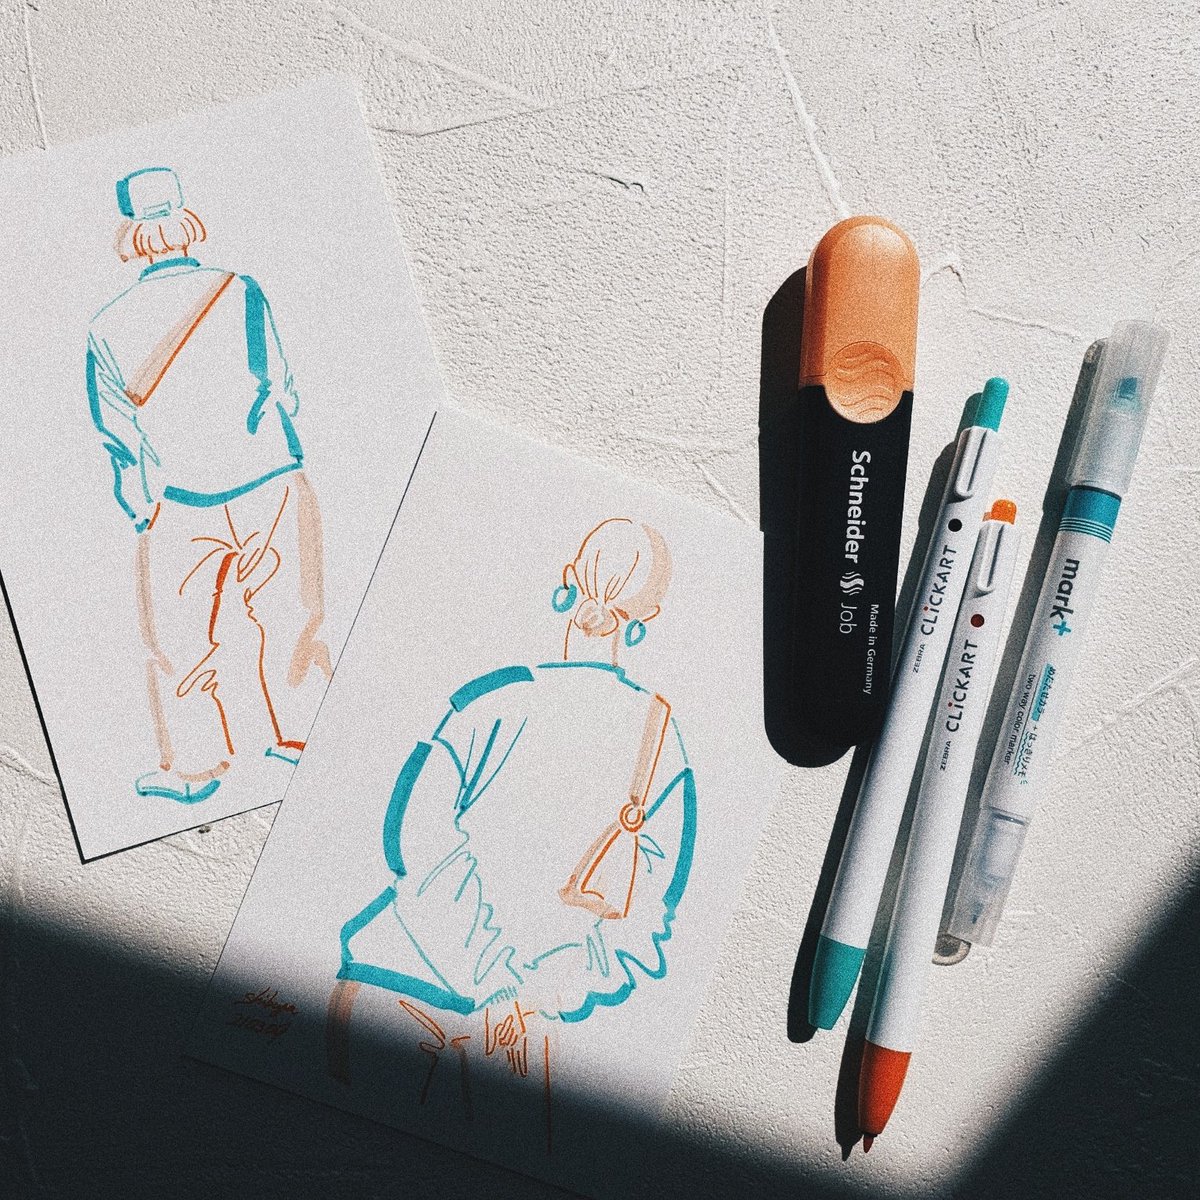 「昨日の街角ドローイングと、使用したペンたち 」|ニシイズミユカのイラスト